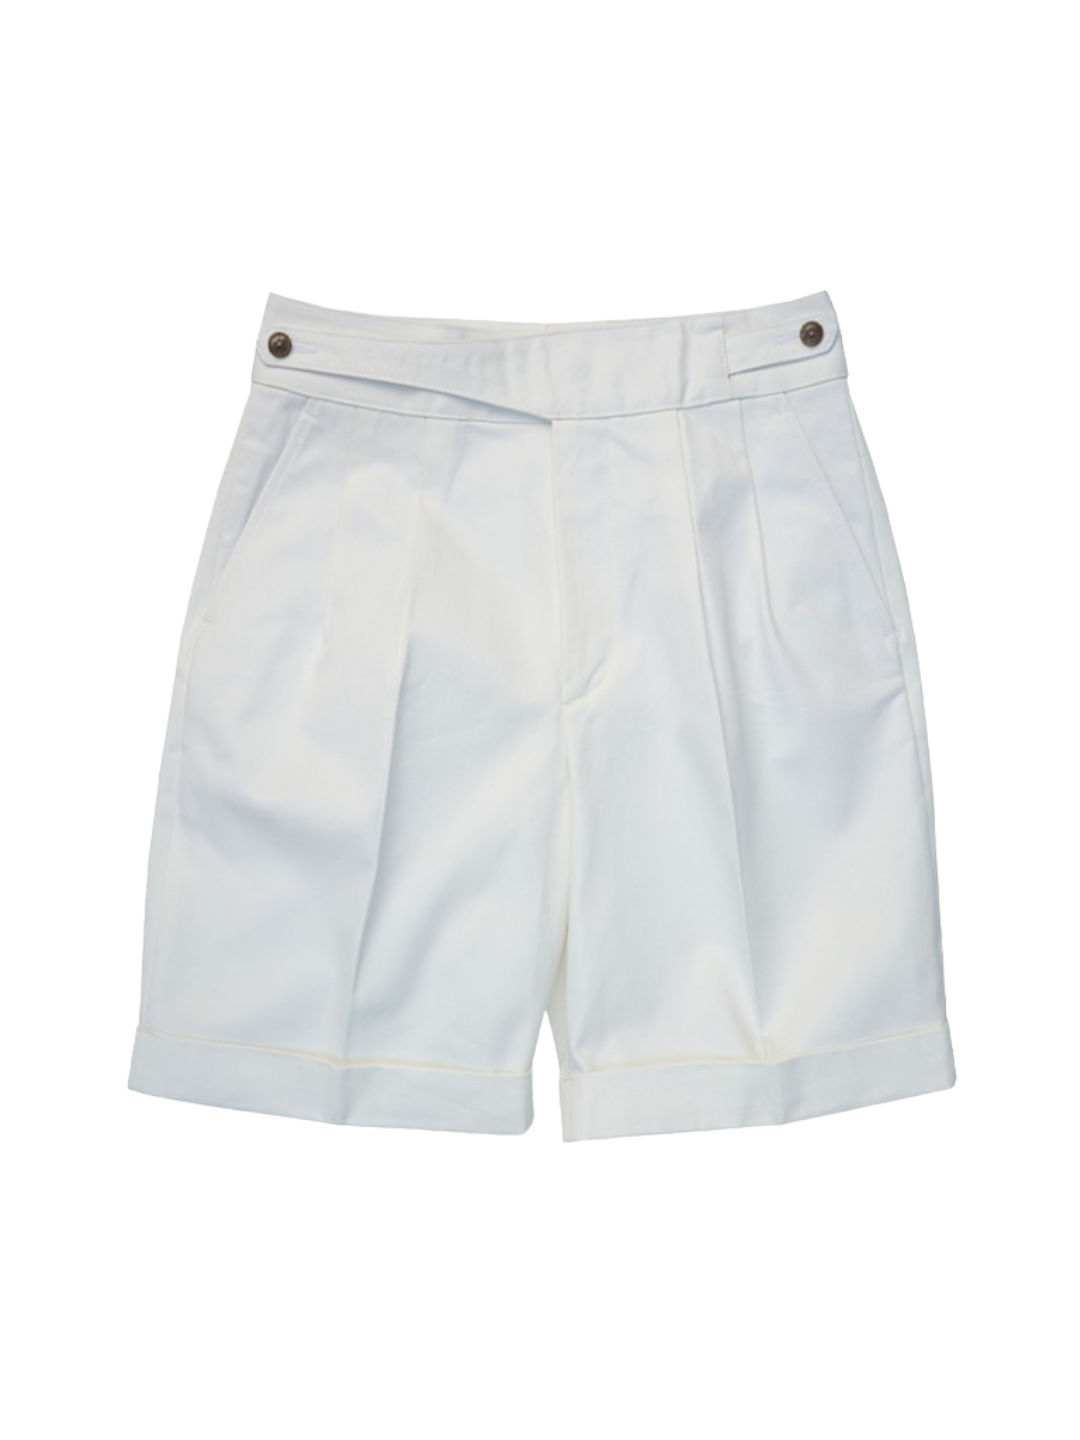 Frank Garcon - (BYU) Gurkha Shorts (White)